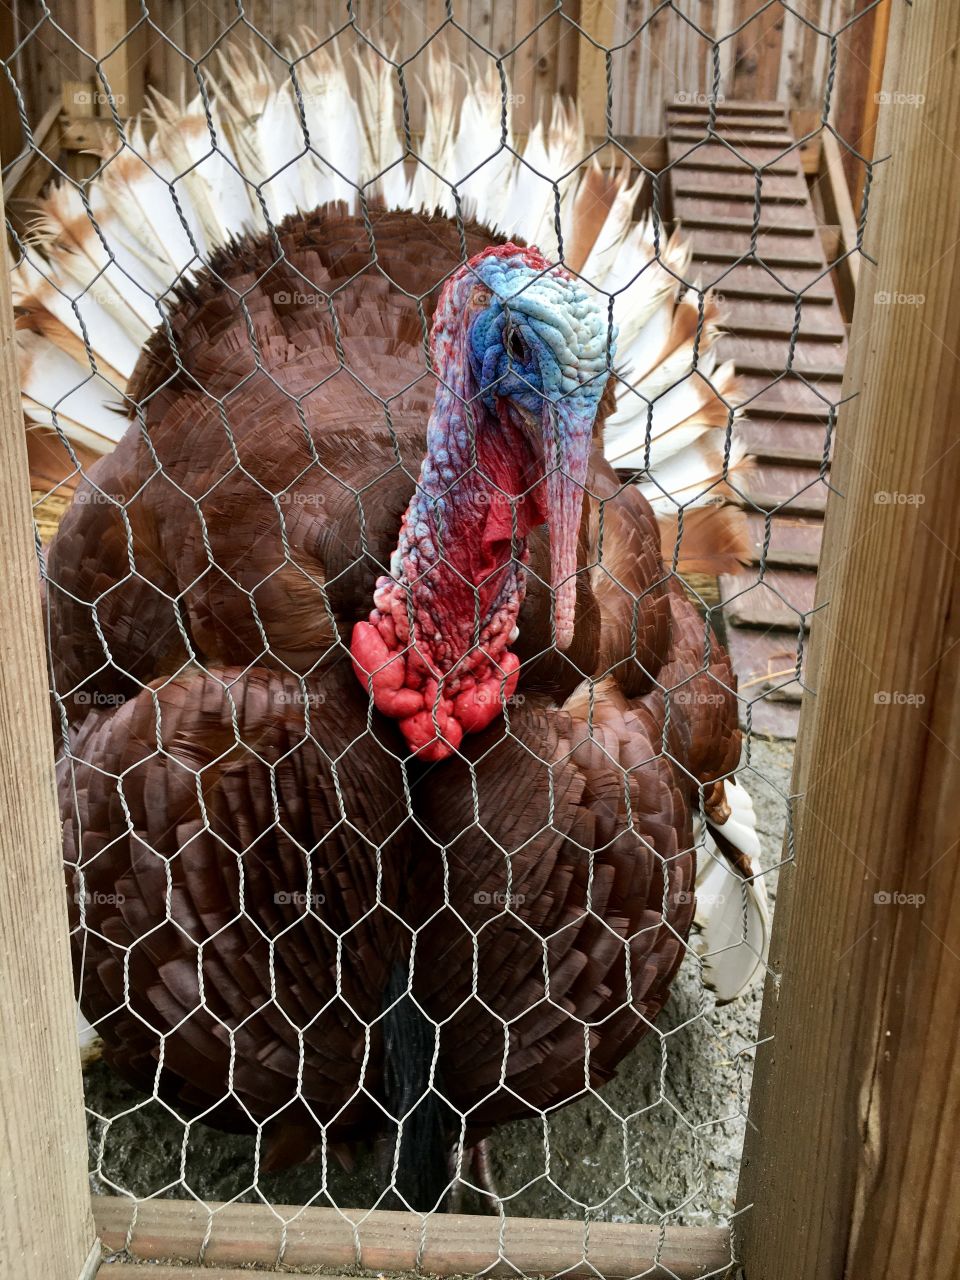 Turkey - Bronx Zoo 